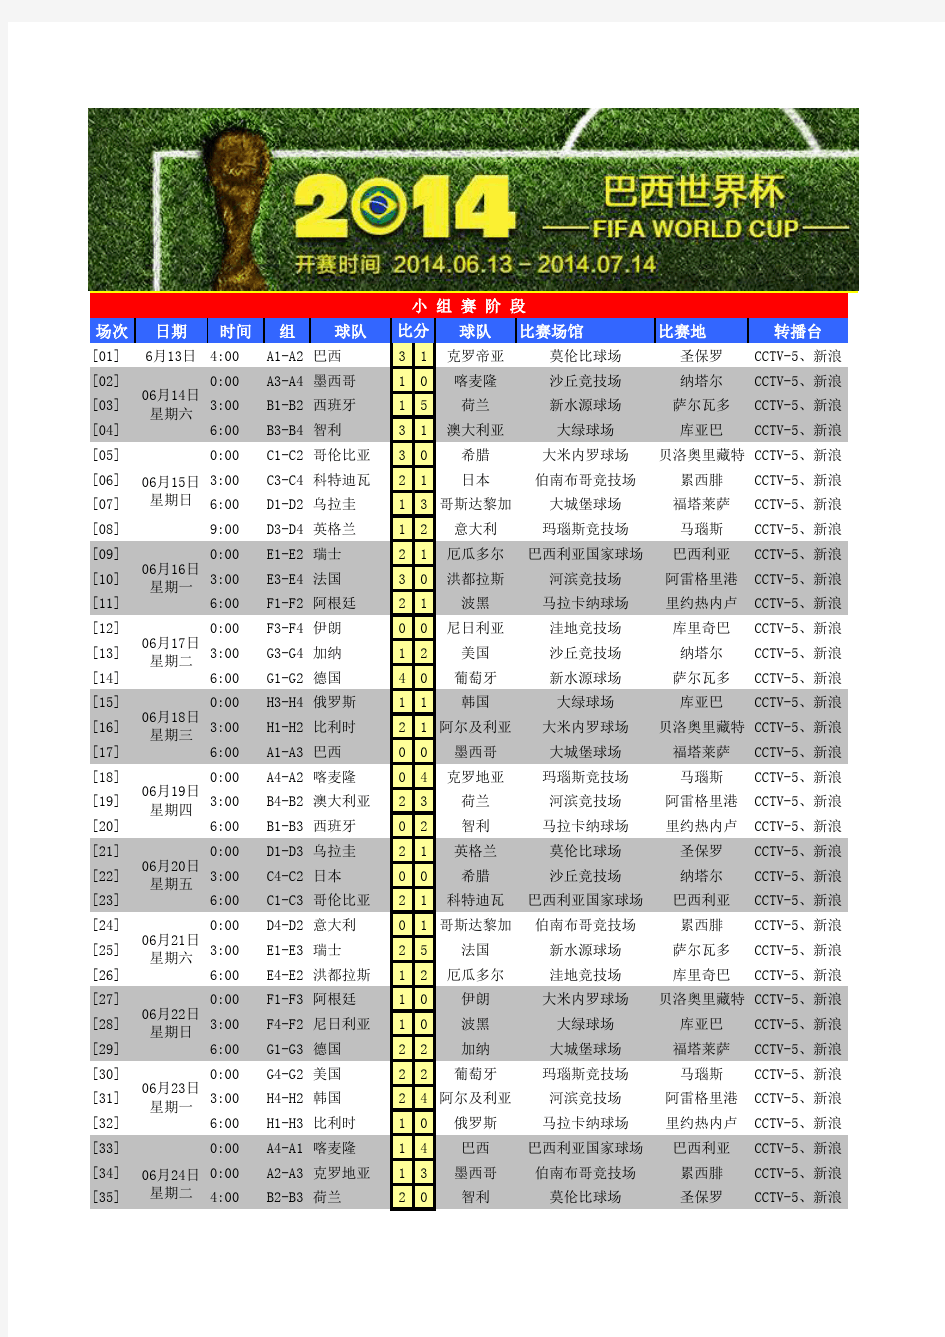 2014巴西世界杯小组赛排位明细表